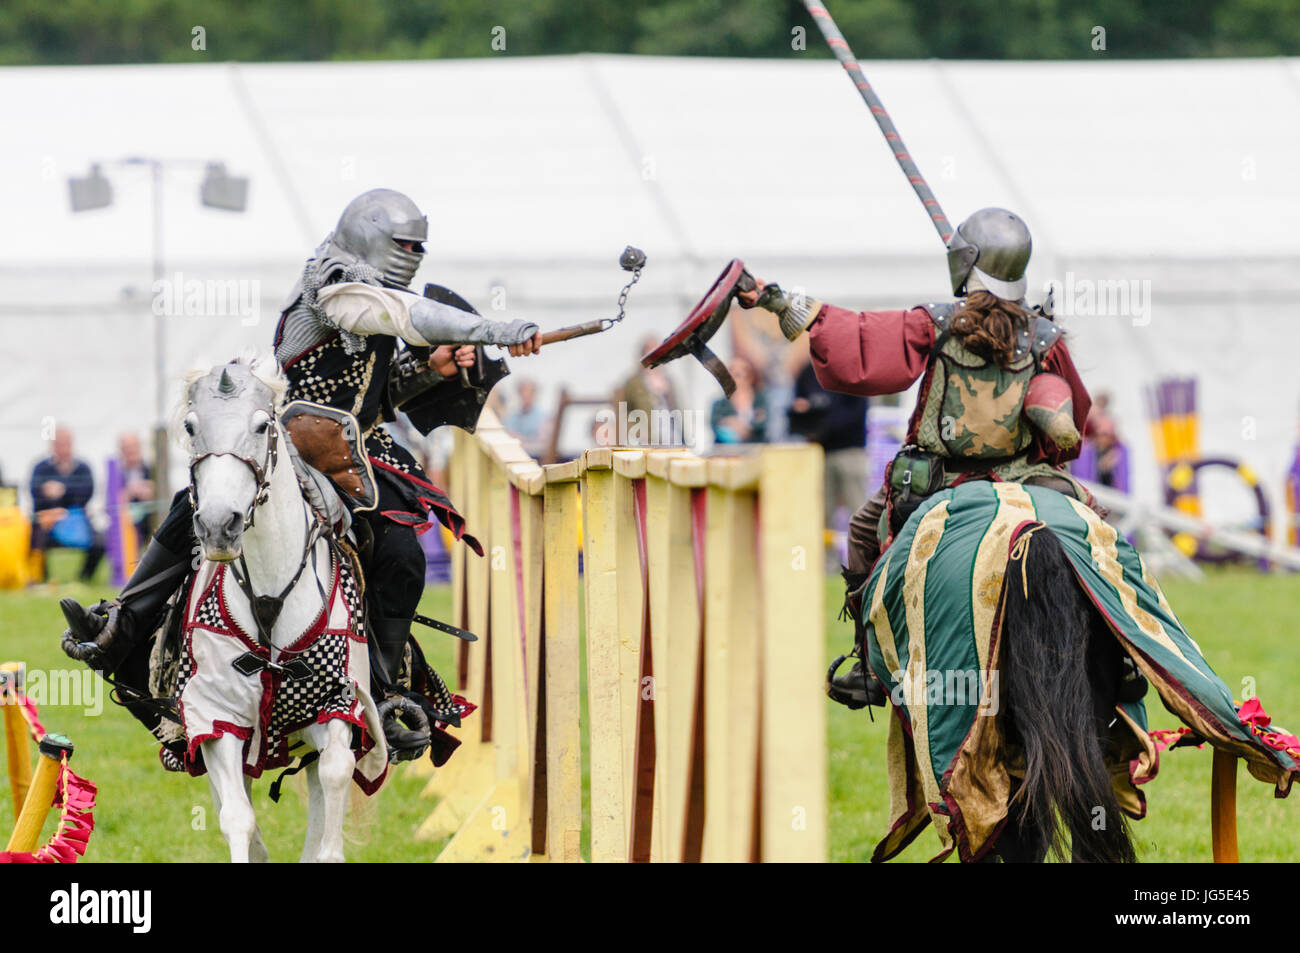 Deux chevaliers au combat à cheval, l'un armé d'une lance, l'autre avec une balle et de la chaîne. Banque D'Images